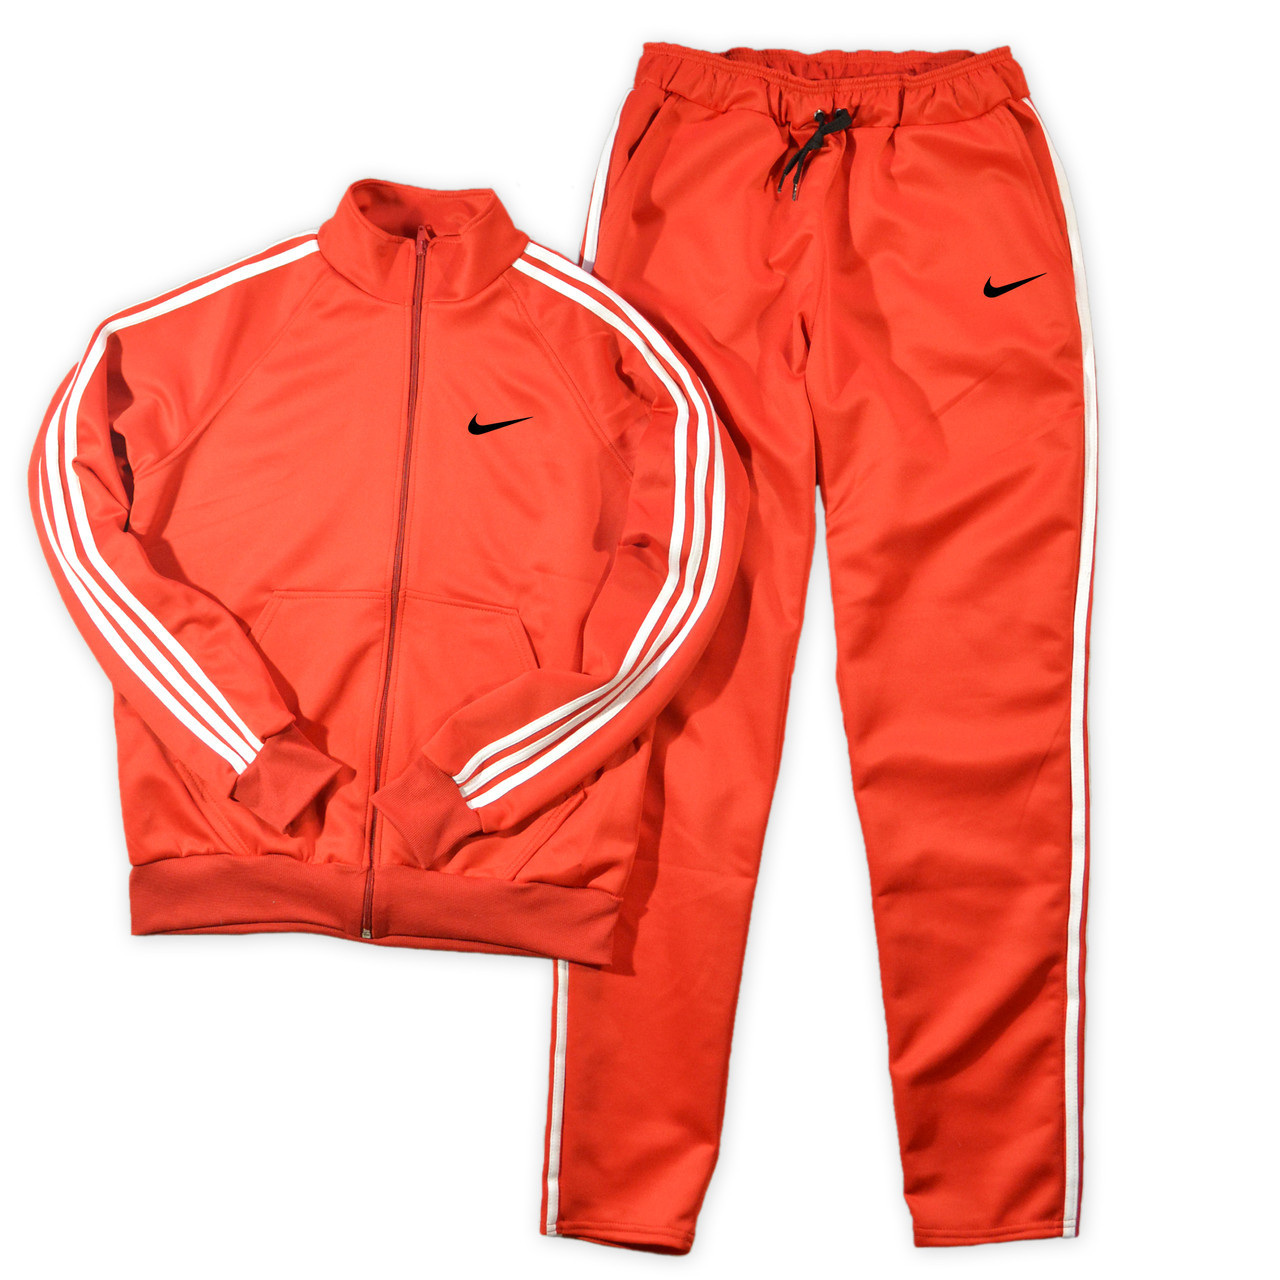 Мужской спортивный костюм Nike (Найк): 992 грн. - Спортивные костюмы Киев  на BESPLATKA.ua 78468645